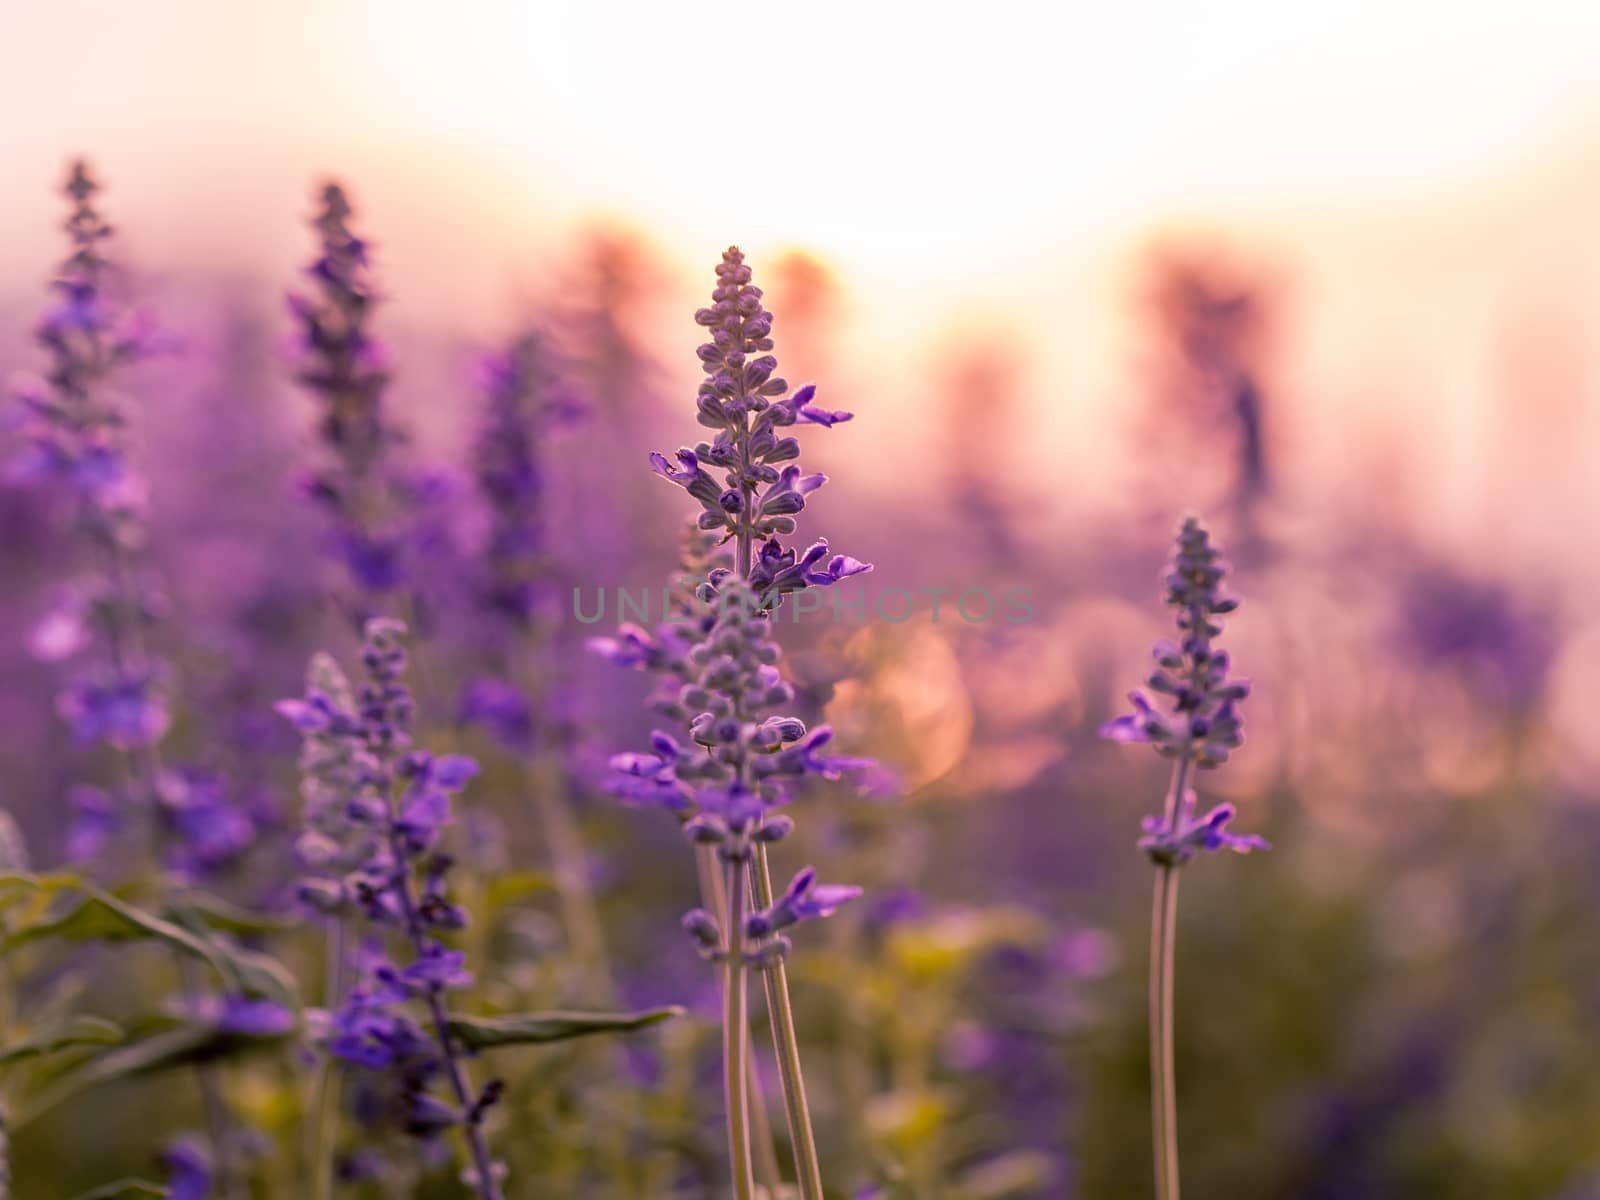 Violet lavender field background on sunset.